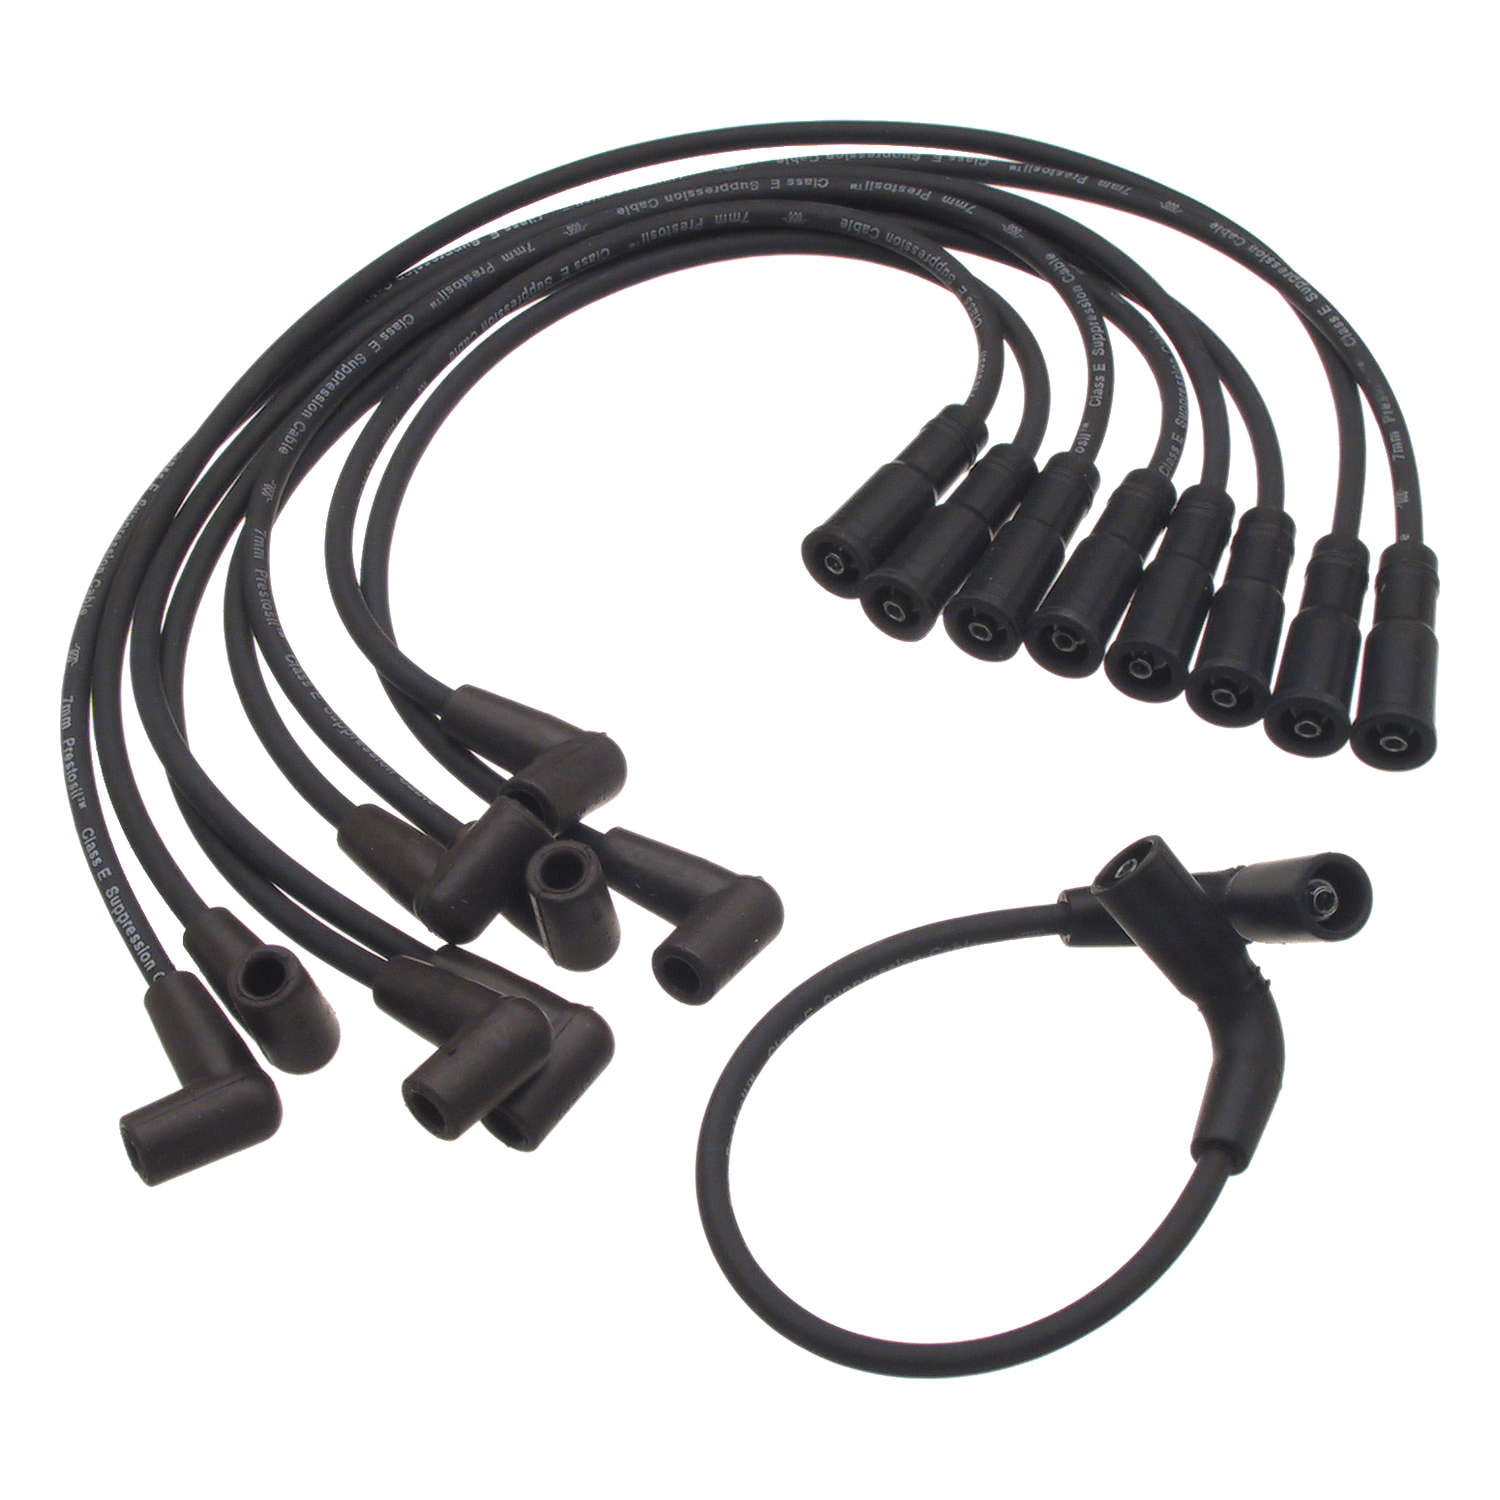 Prestolite 124005 ProConnect Gray Professional O.E Grade Ignition Wire Set